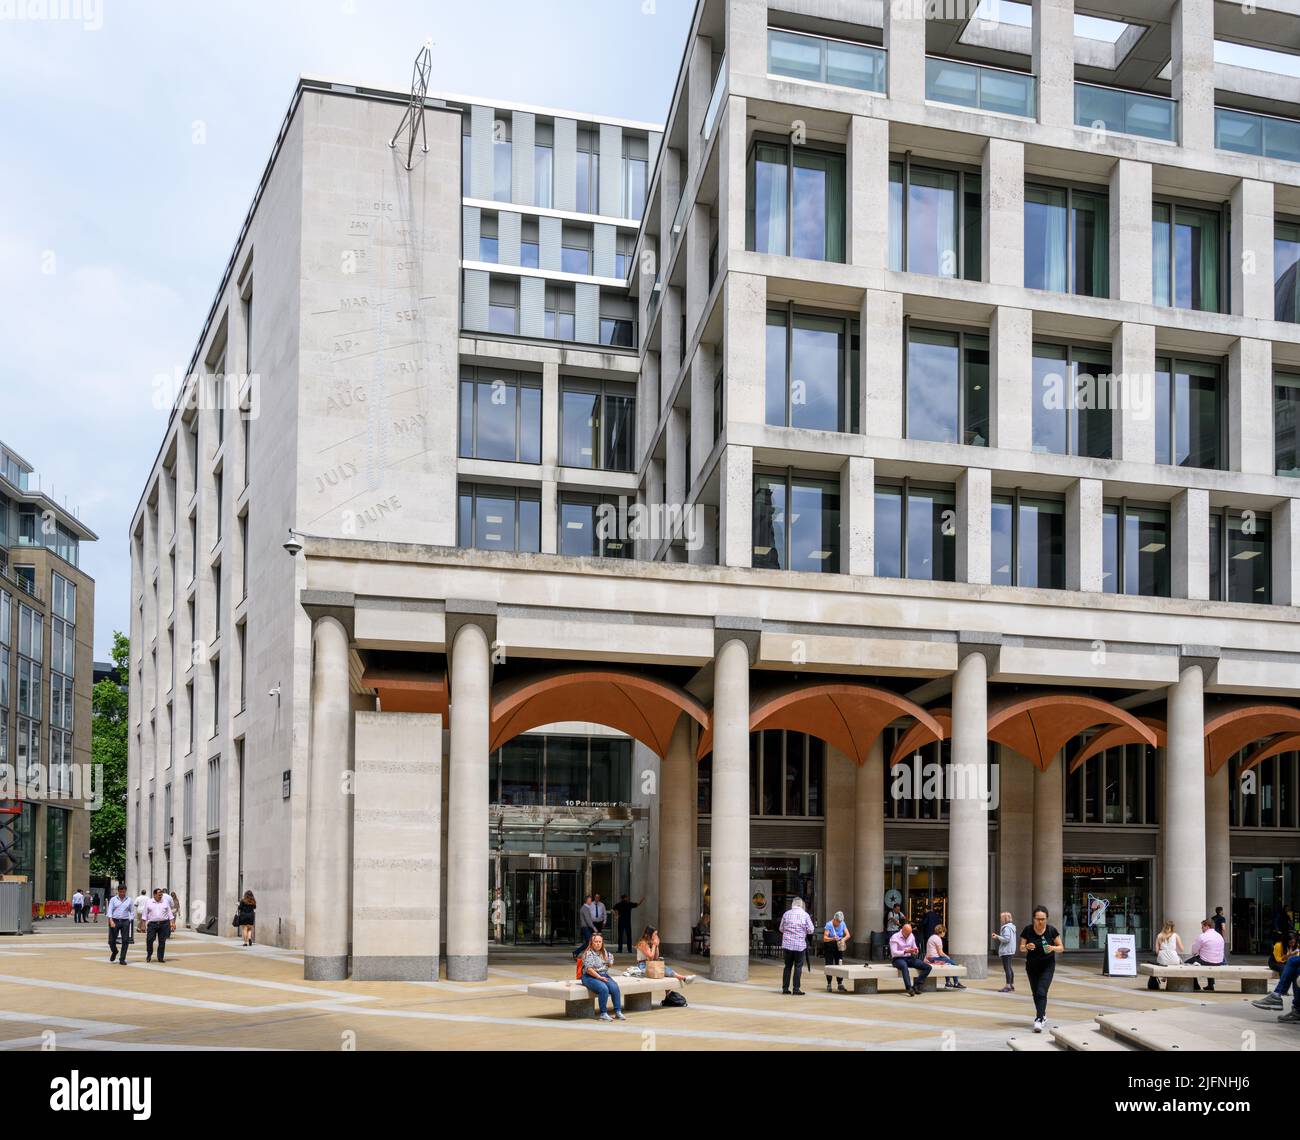 Le bâtiment de la Bourse de Londres, Paternoster Square, City of London, Londres, Angleterre, ROYAUME-UNI Banque D'Images